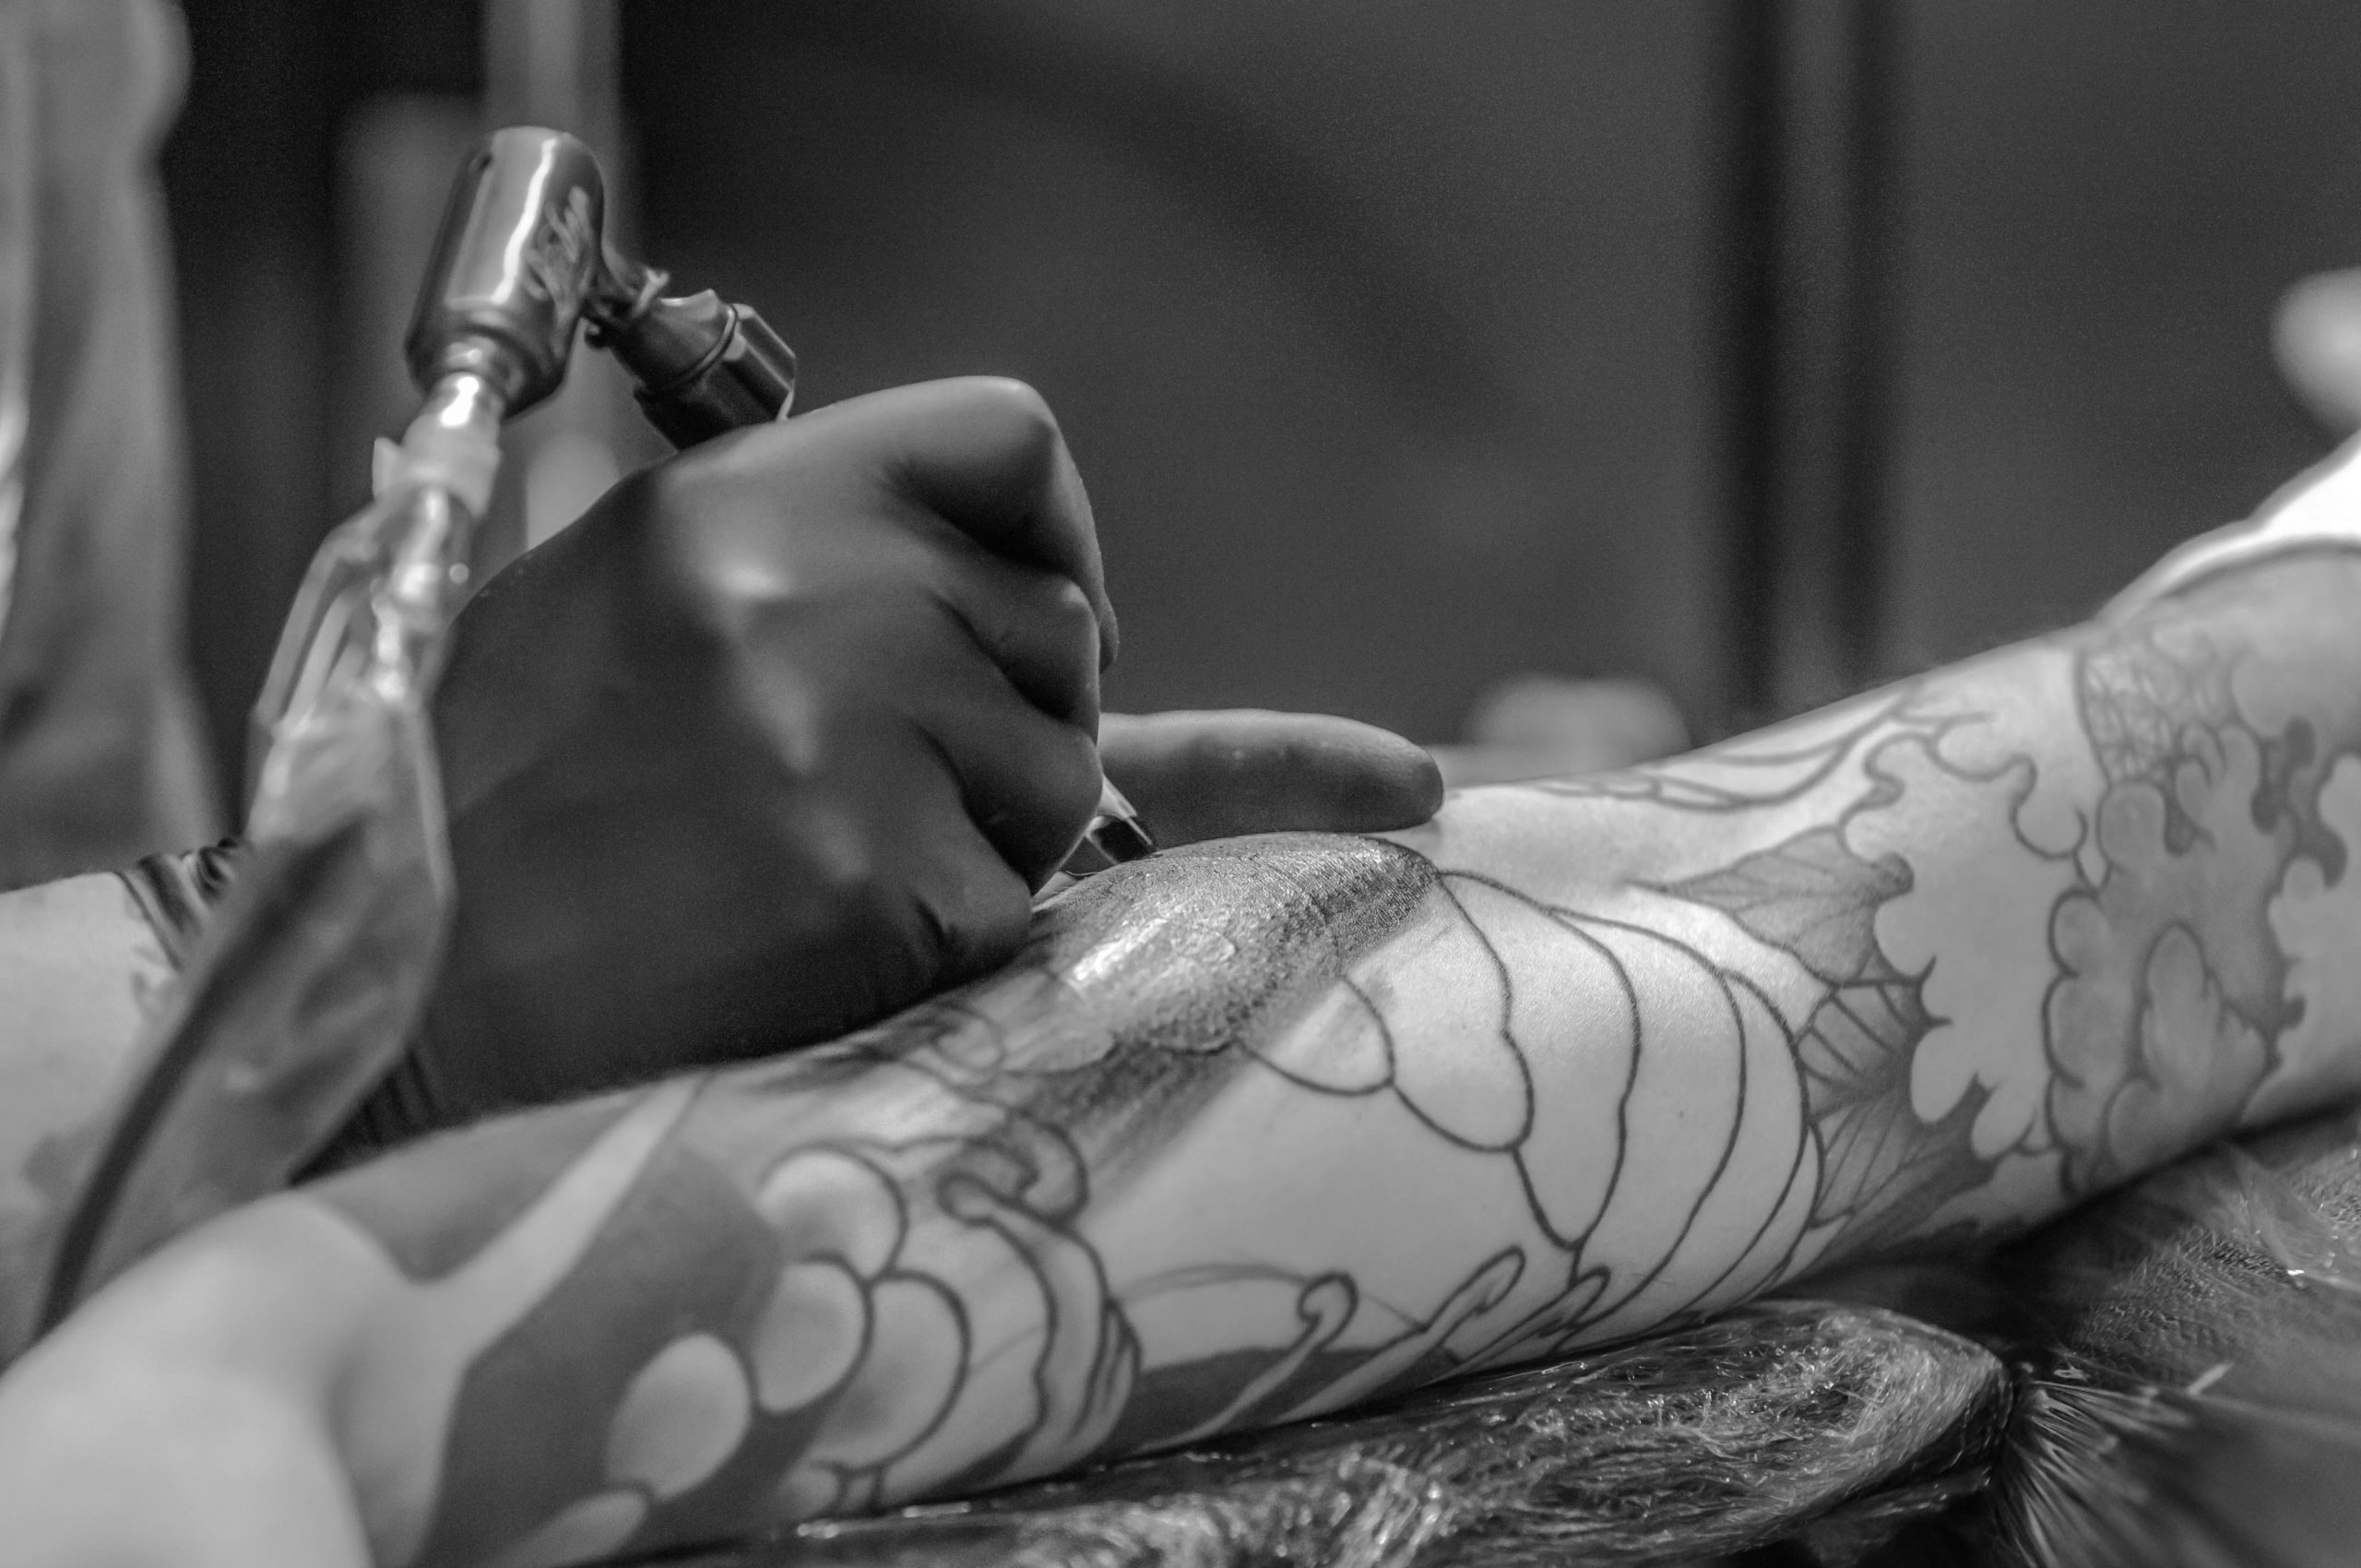 Tatuadores hartos de estos tatuajes, más populares entre hombres